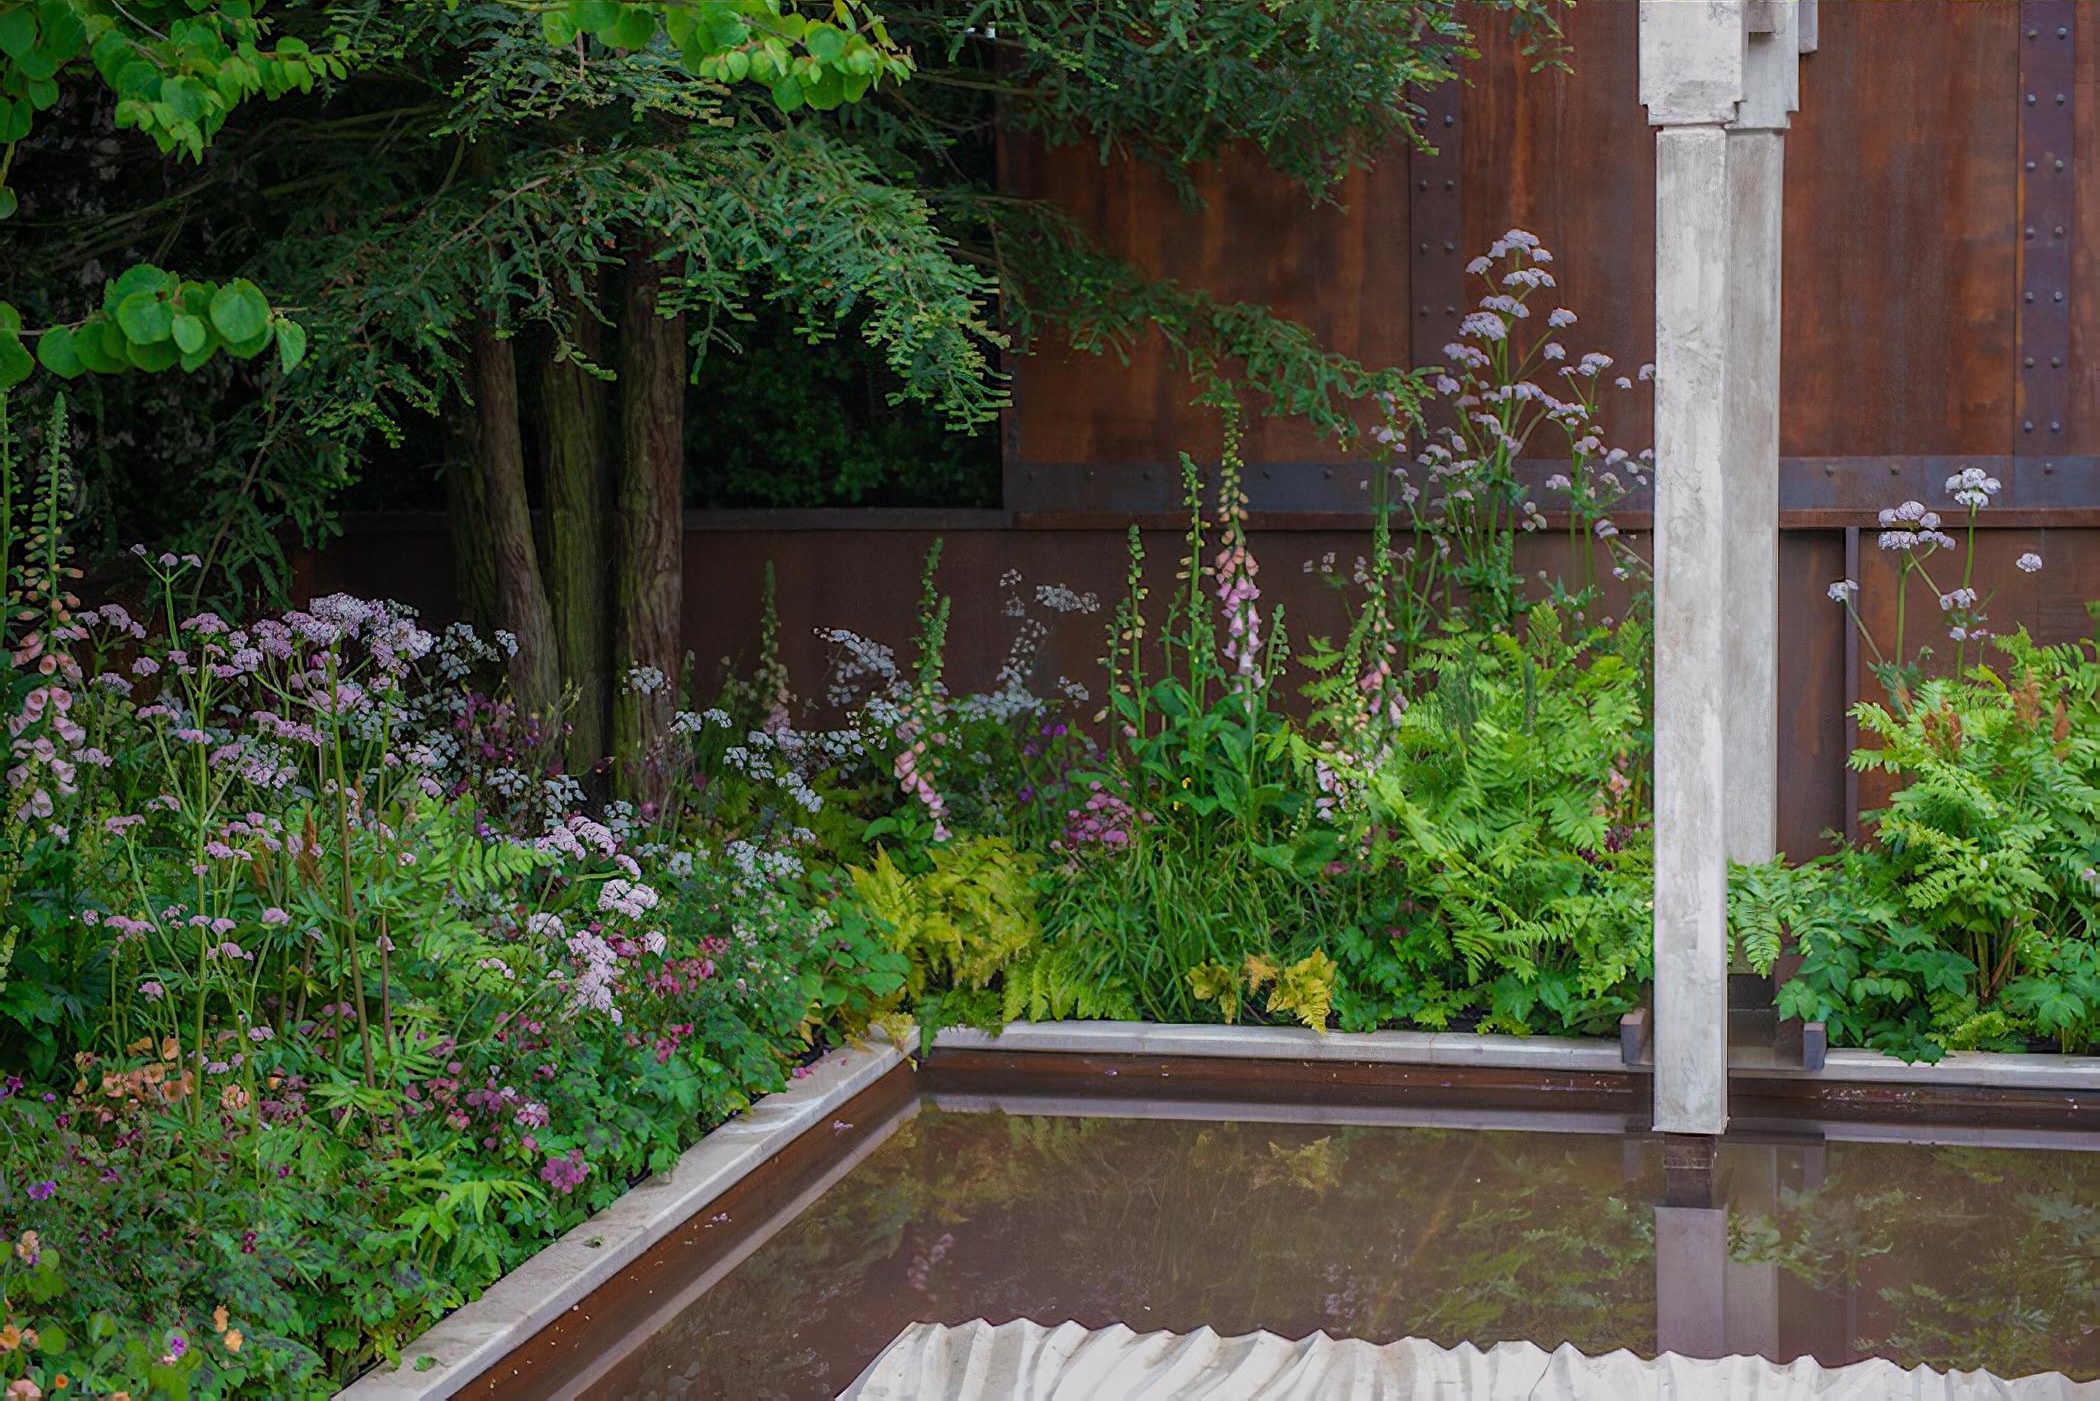 The Wedgwood Garden by garden designer Jo Thompson Chelsea Flower Show 2019